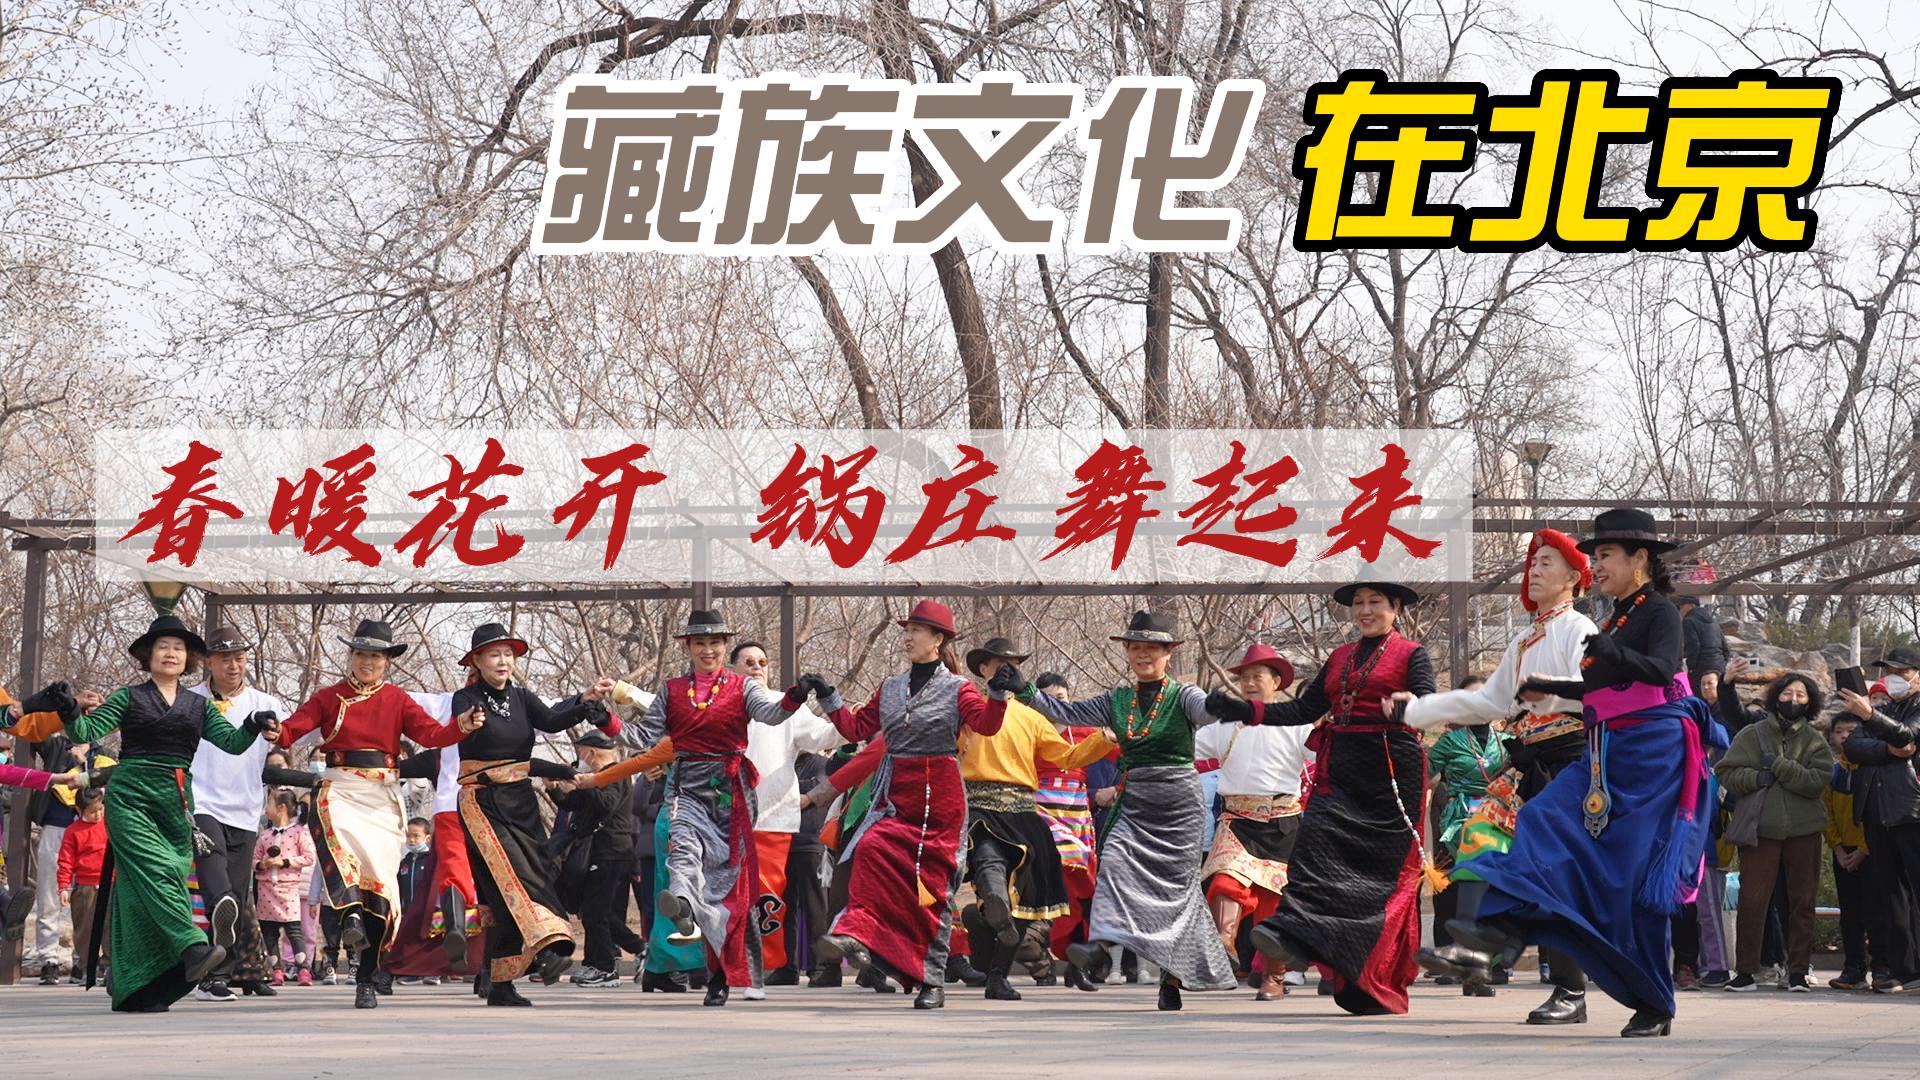 【藏族文化在北京】春暖花开 锅庄舞起来